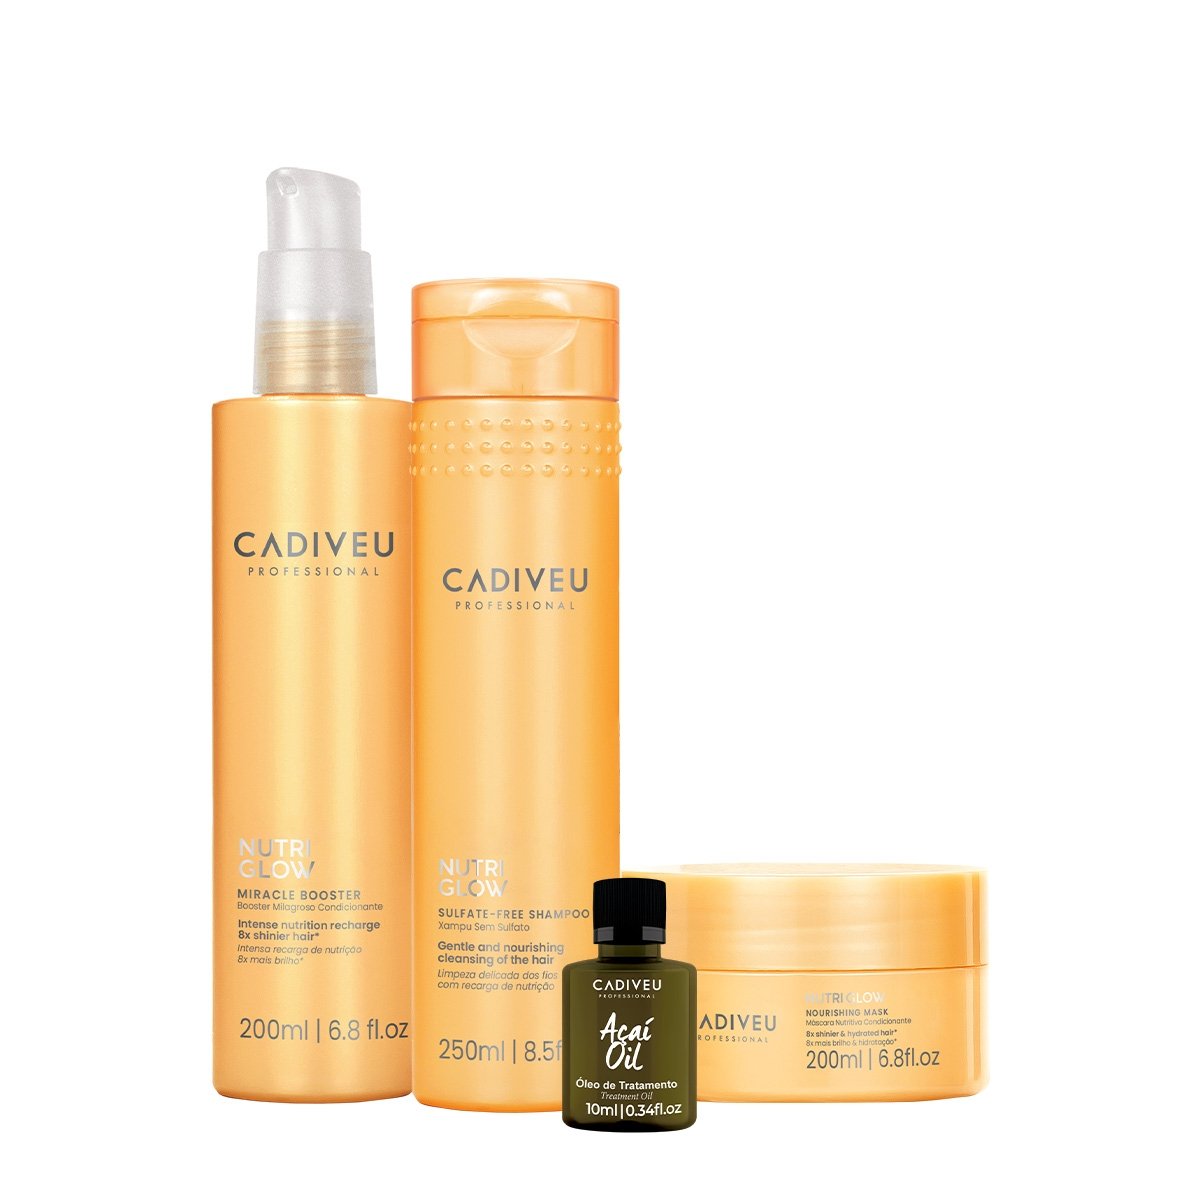 Kit Cadiveu Professional Nutri Glow Shampoo Mascara Pre-Shampoo e Acai Oil (4 produtos)